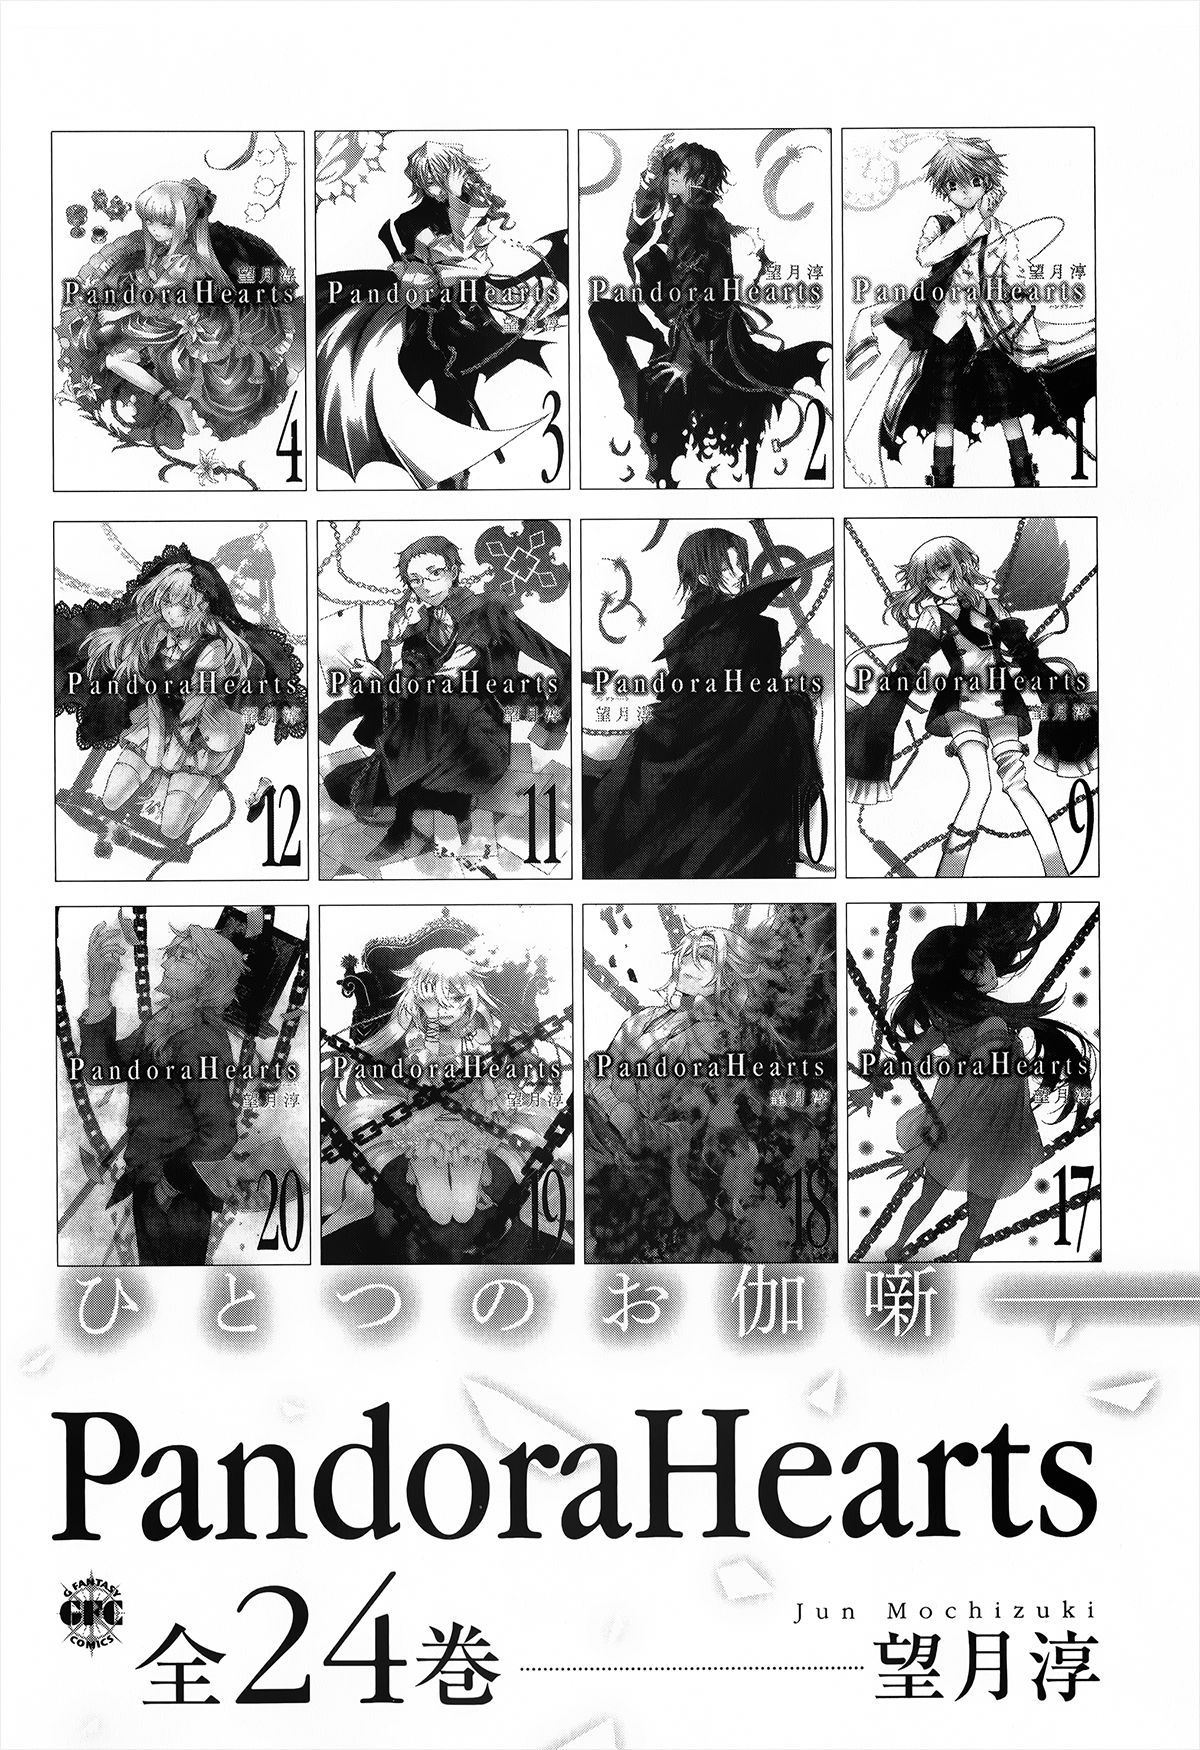 Pandora Hearts Guidebook 24+1: Last Dance パンドラハーツ オフィシャルガイド 24 + 1 ~Last Dance! 252